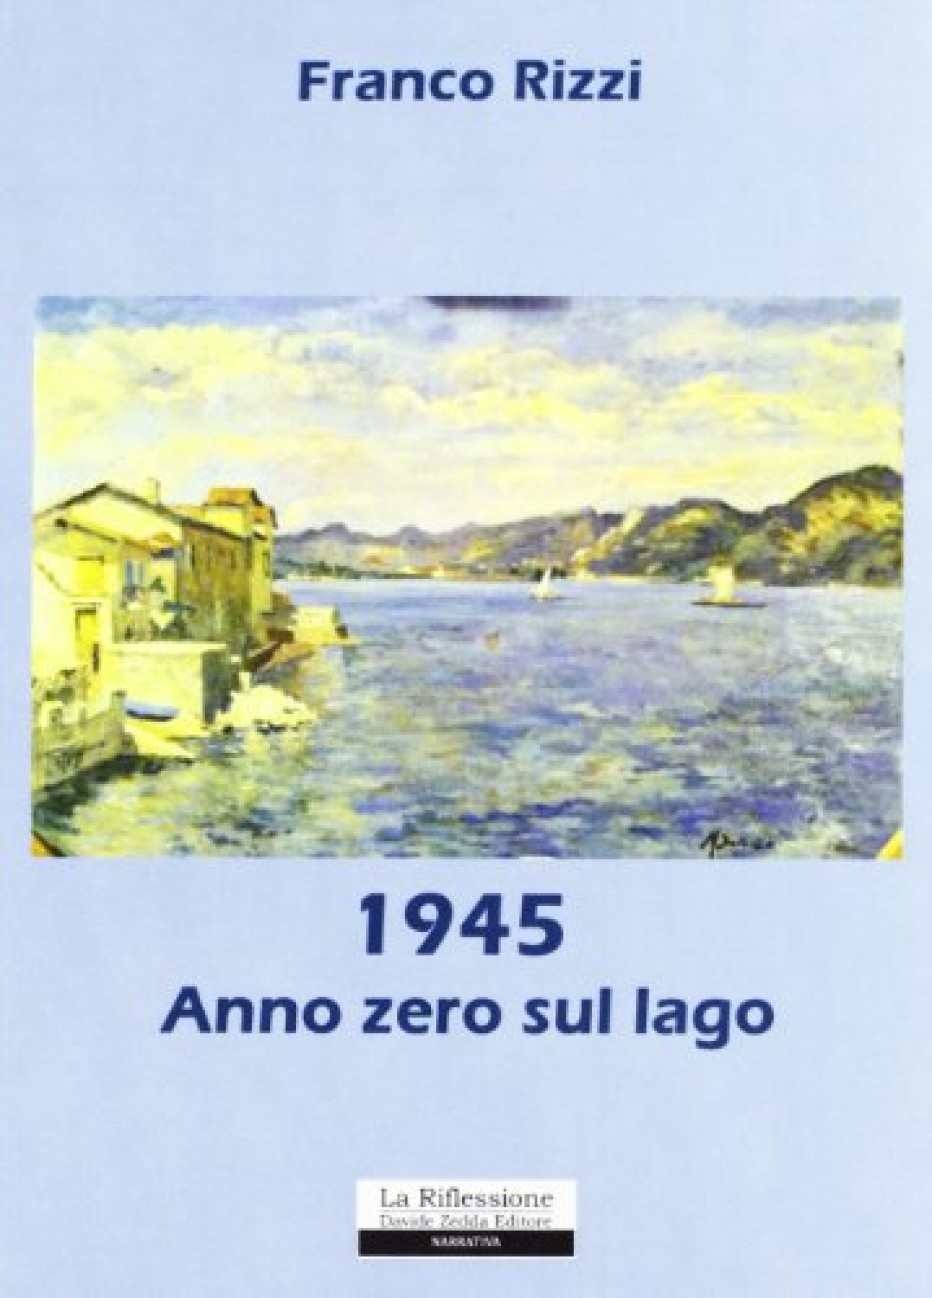 “1945 Anno zero sul lago” di Franco Rizzi: un pilota inglese di origini italiane ritorna sul luogo del misfatto